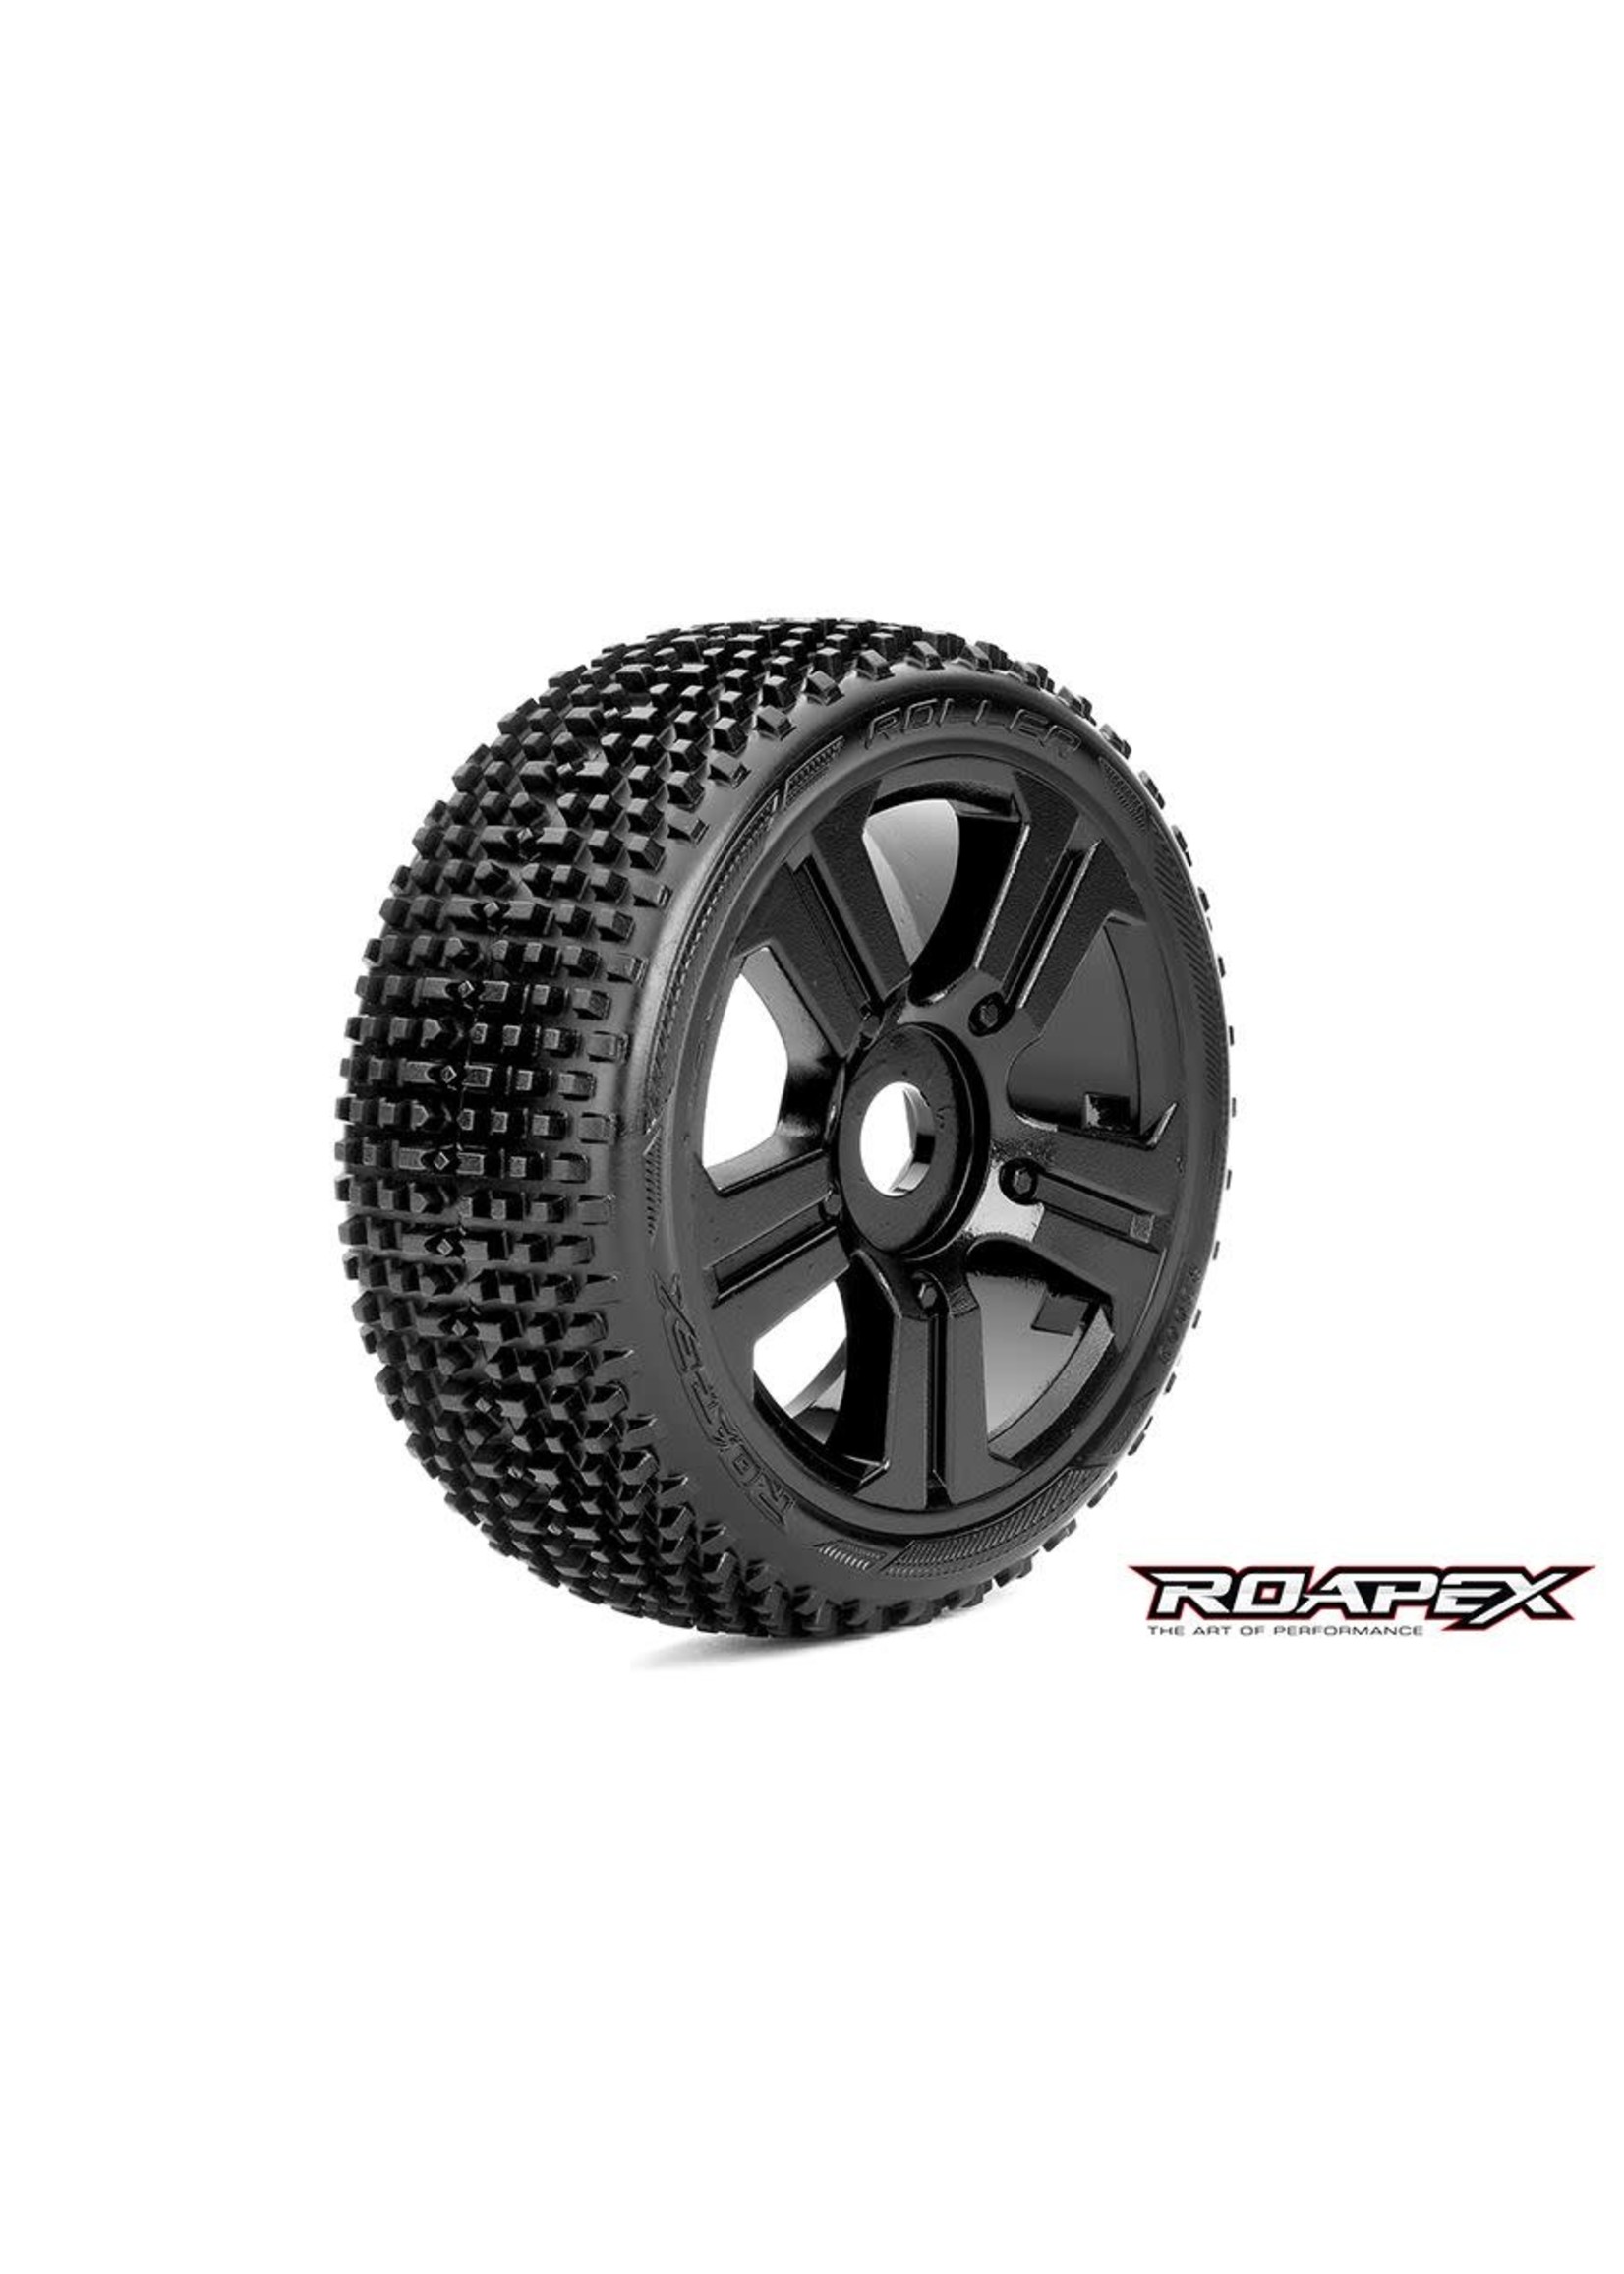 ROAPEX ROPR5003-B Roapex Roller 1/8 Buggy Tires, Mounted on Black Wheels, 17mm Hex (1 pair)